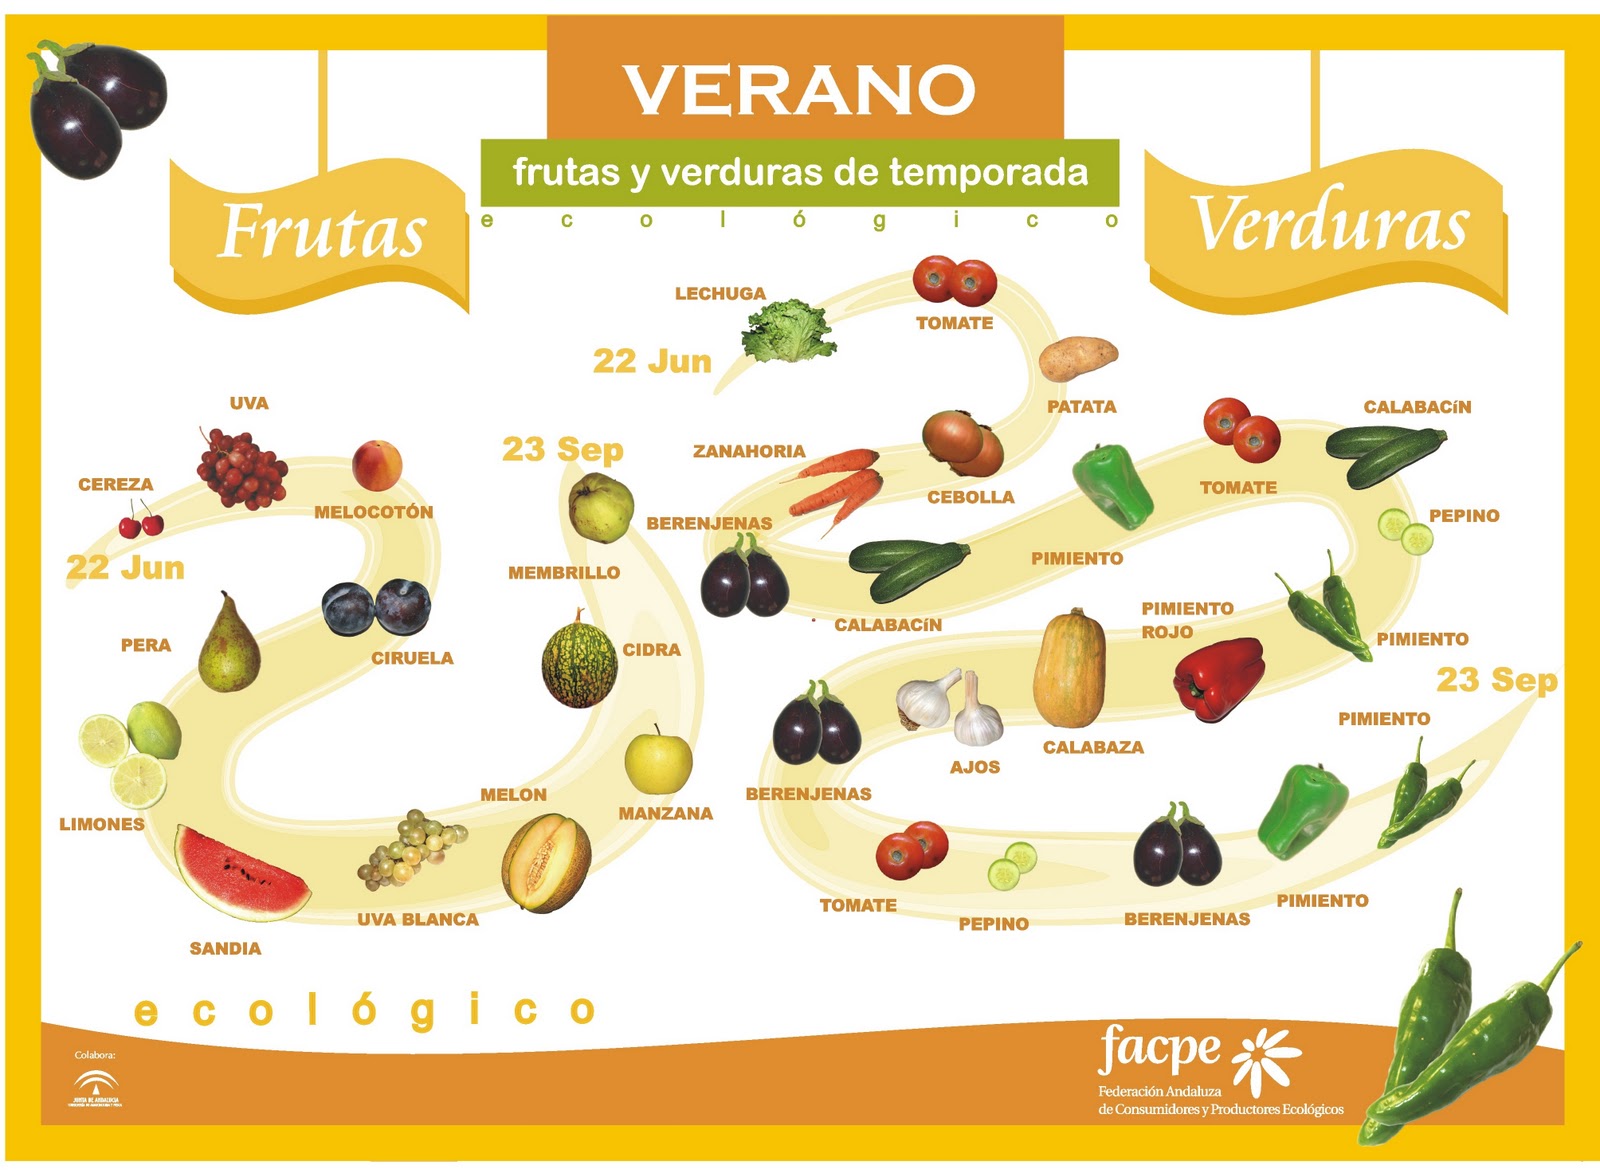 images Frutas y Verduras Verano1 - Consejos en la cocina